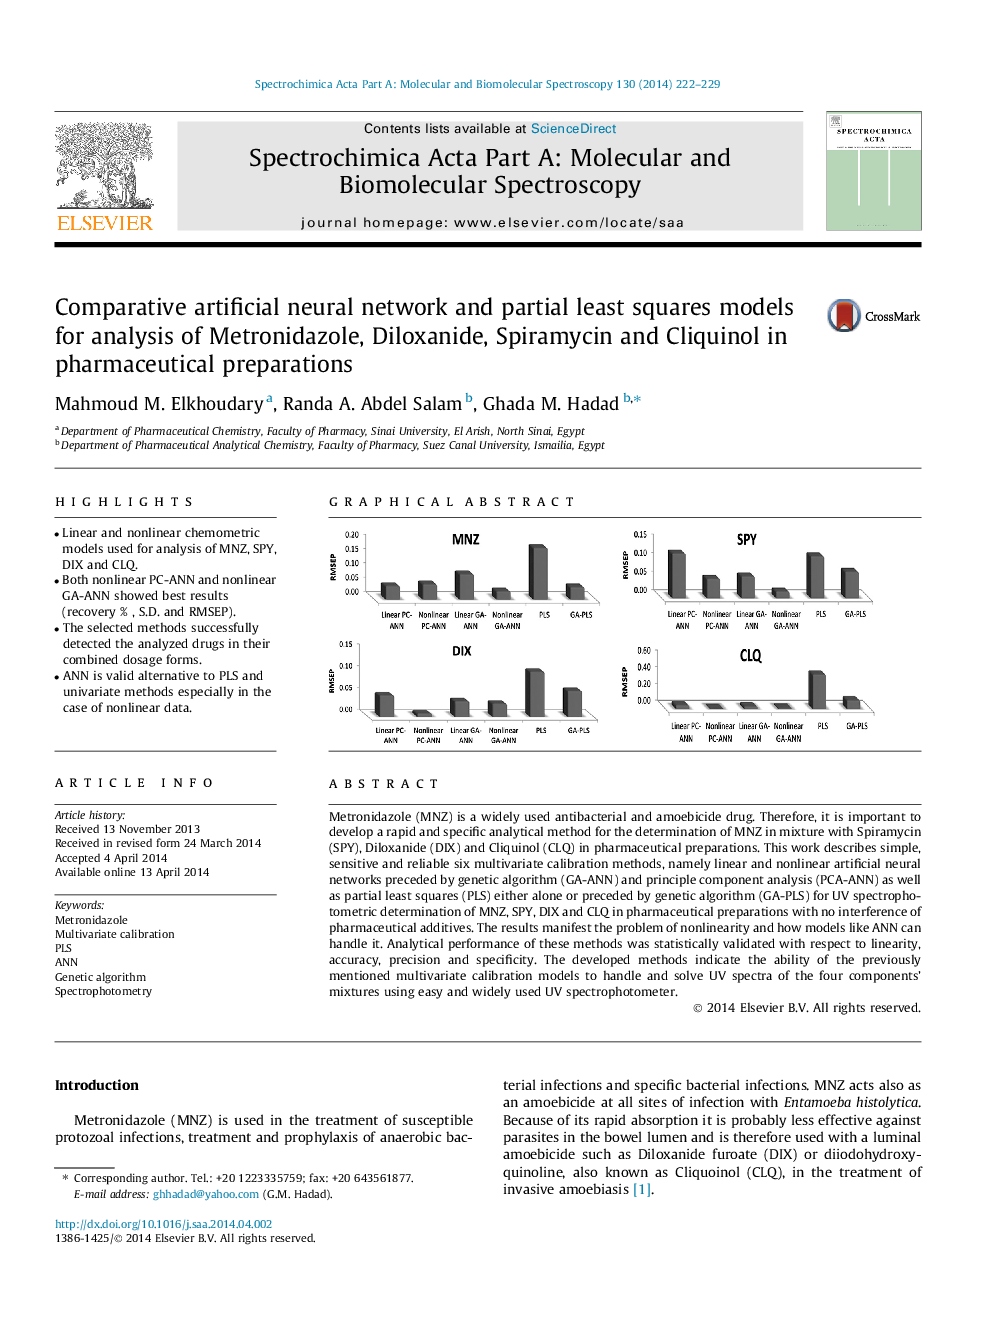 شبکه های عصبی مصنوعی و مدل های جزئی کمترین مربعات برای تجزیه و تحلیل مترونیدازول، دیوکسانید، اسپیرامیسین و کلویینول در داروهای دارویی 